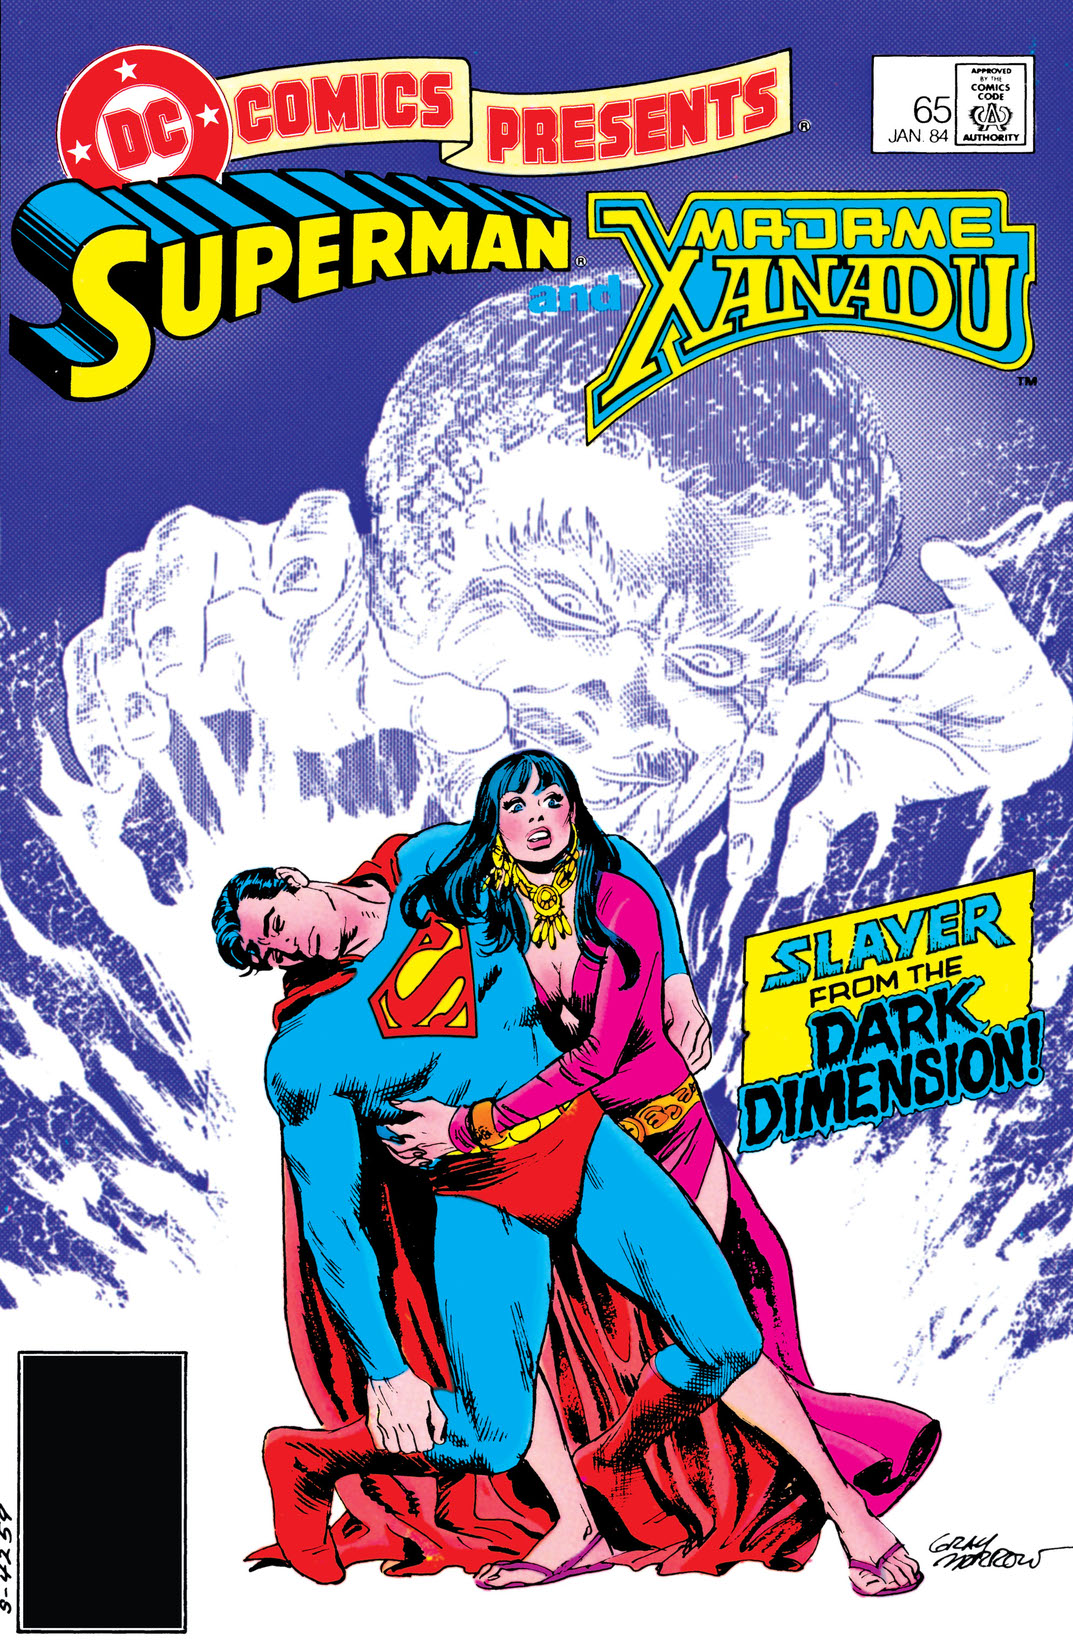 DC Comics Presents (1978-1986) #65 preview images